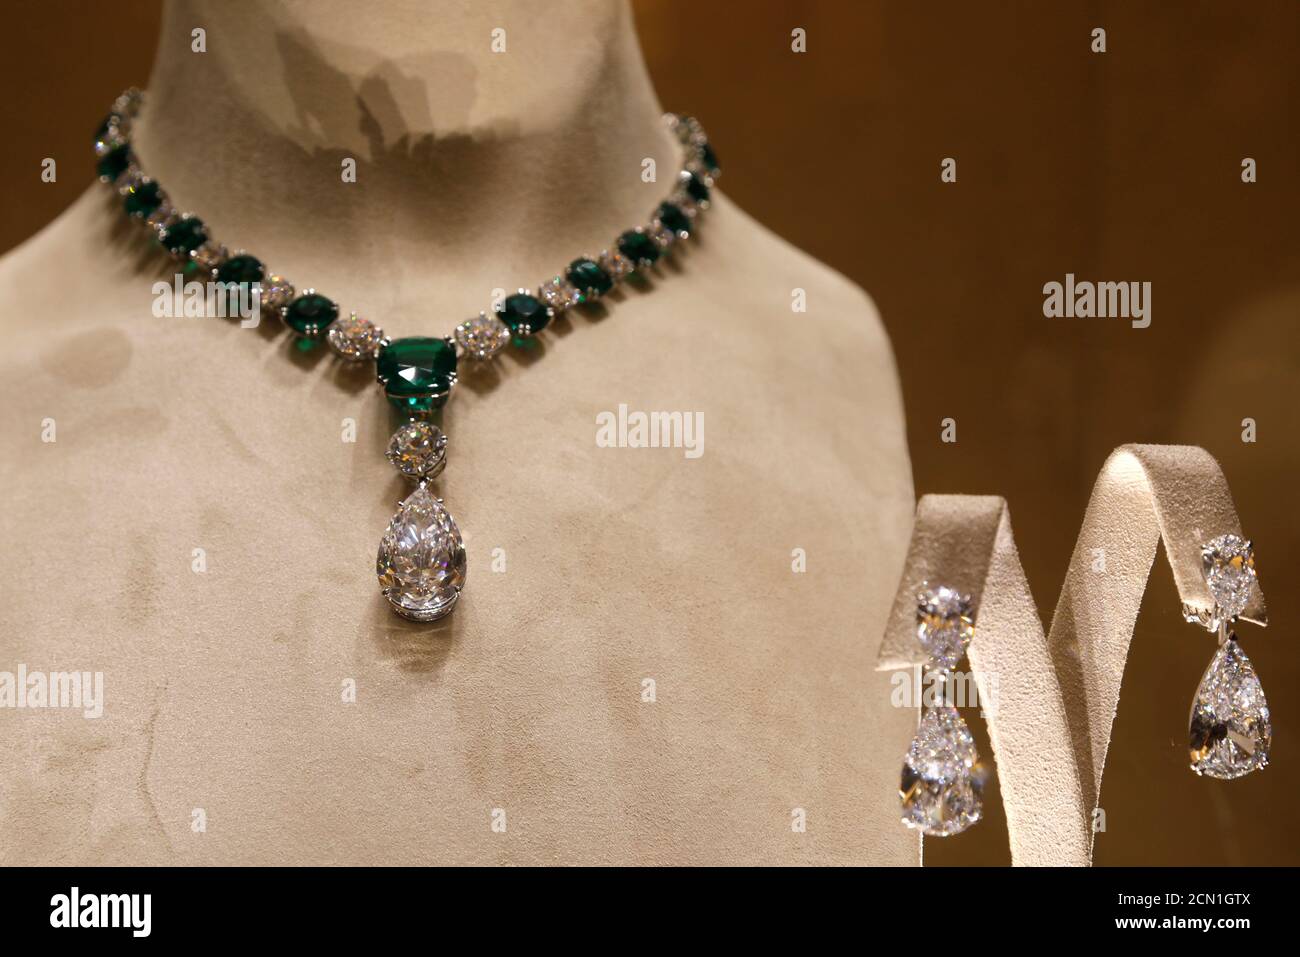 Las joyas de la Red Carpet 2018 Collection se exhiben en la joyería de lujo  Chopard tienda en París, Francia, 4 de julio de 2018. Chopard presentó su  última colección de joyas